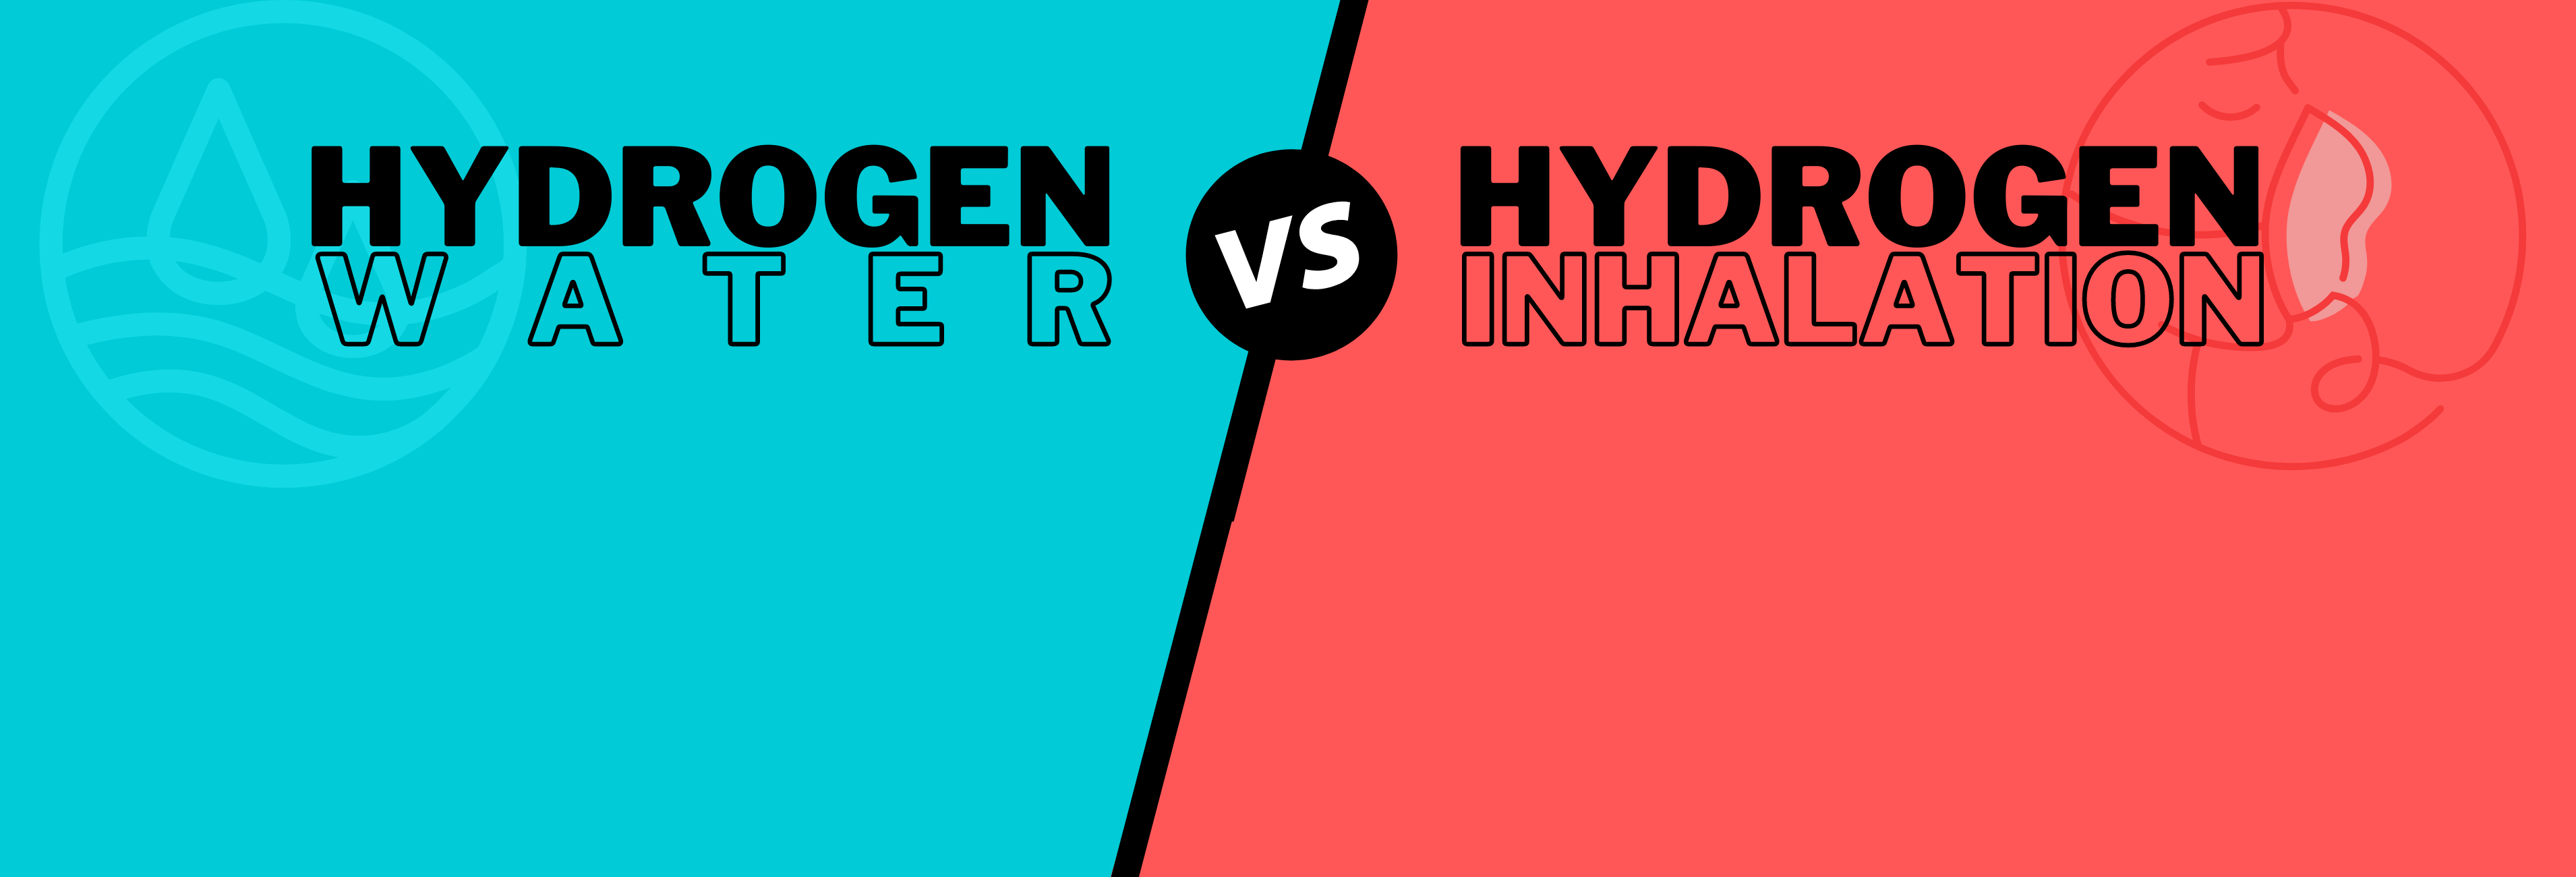 Hydrogen Water vs Hydrogen inhalation